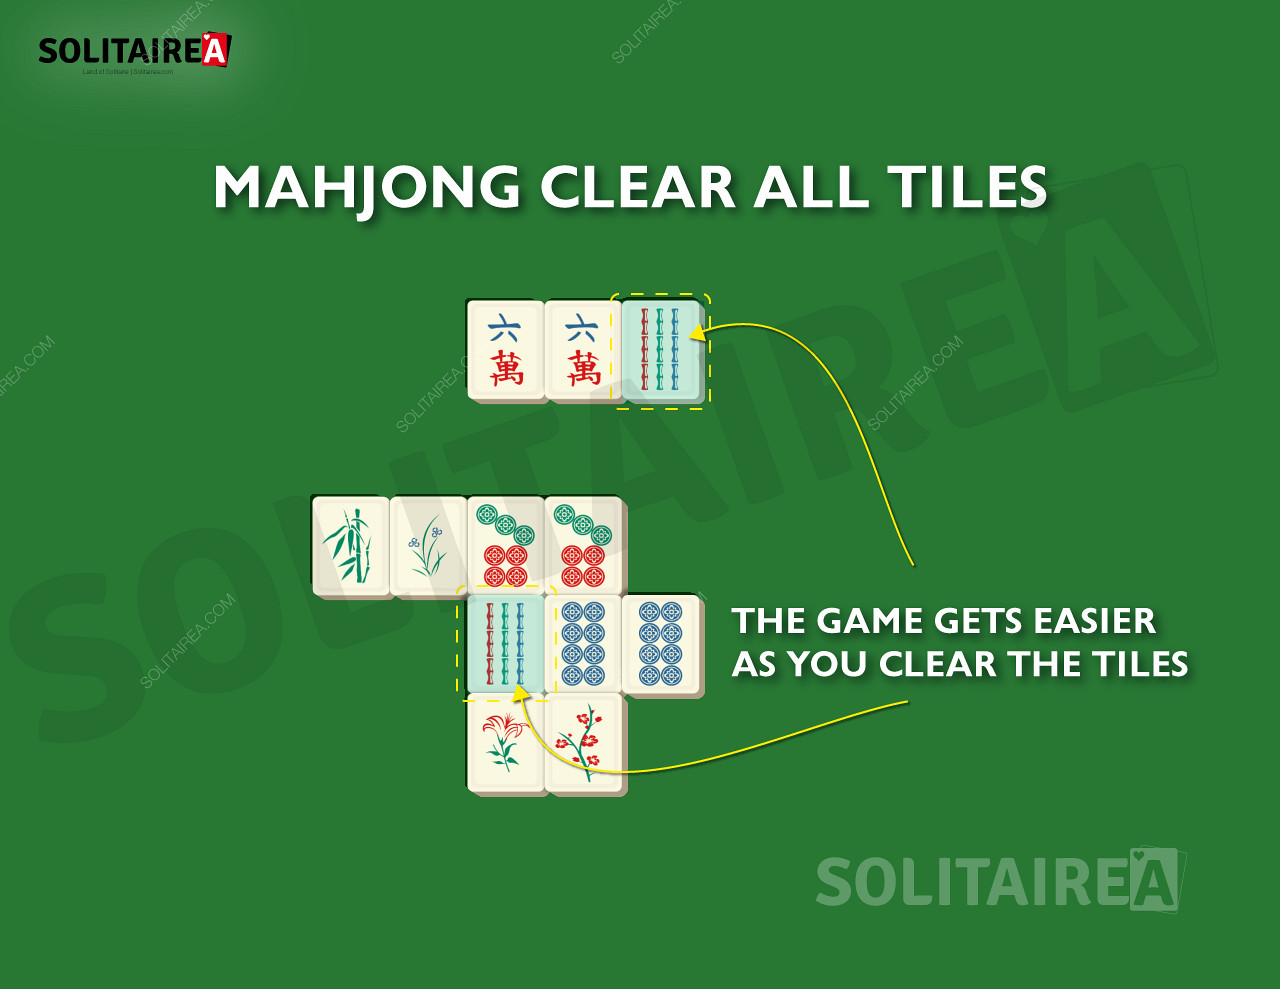 W miarę postępów w grze Mahjong Solitaire do usunięcia pozostaje coraz mniej płytek.